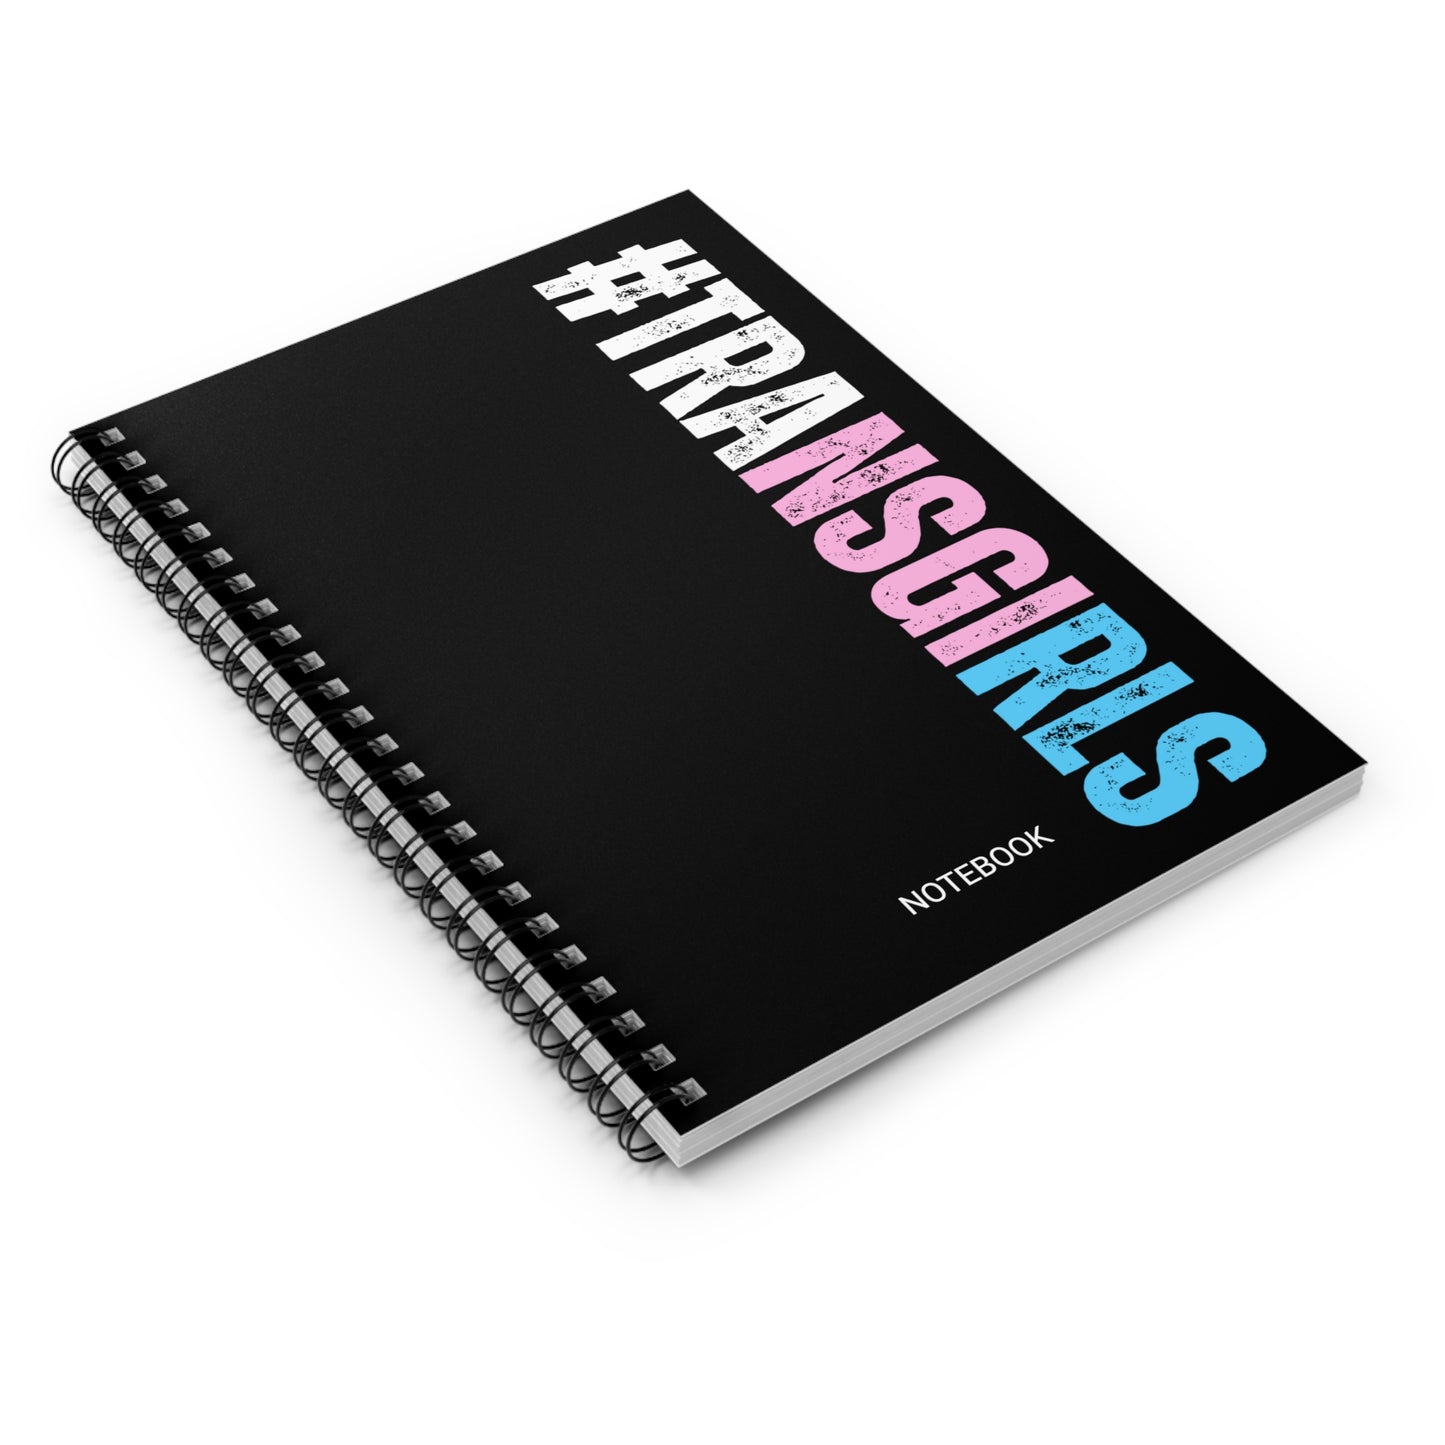 Blue Pink White #TRANSGIRLS Series Black Spiral Notebook